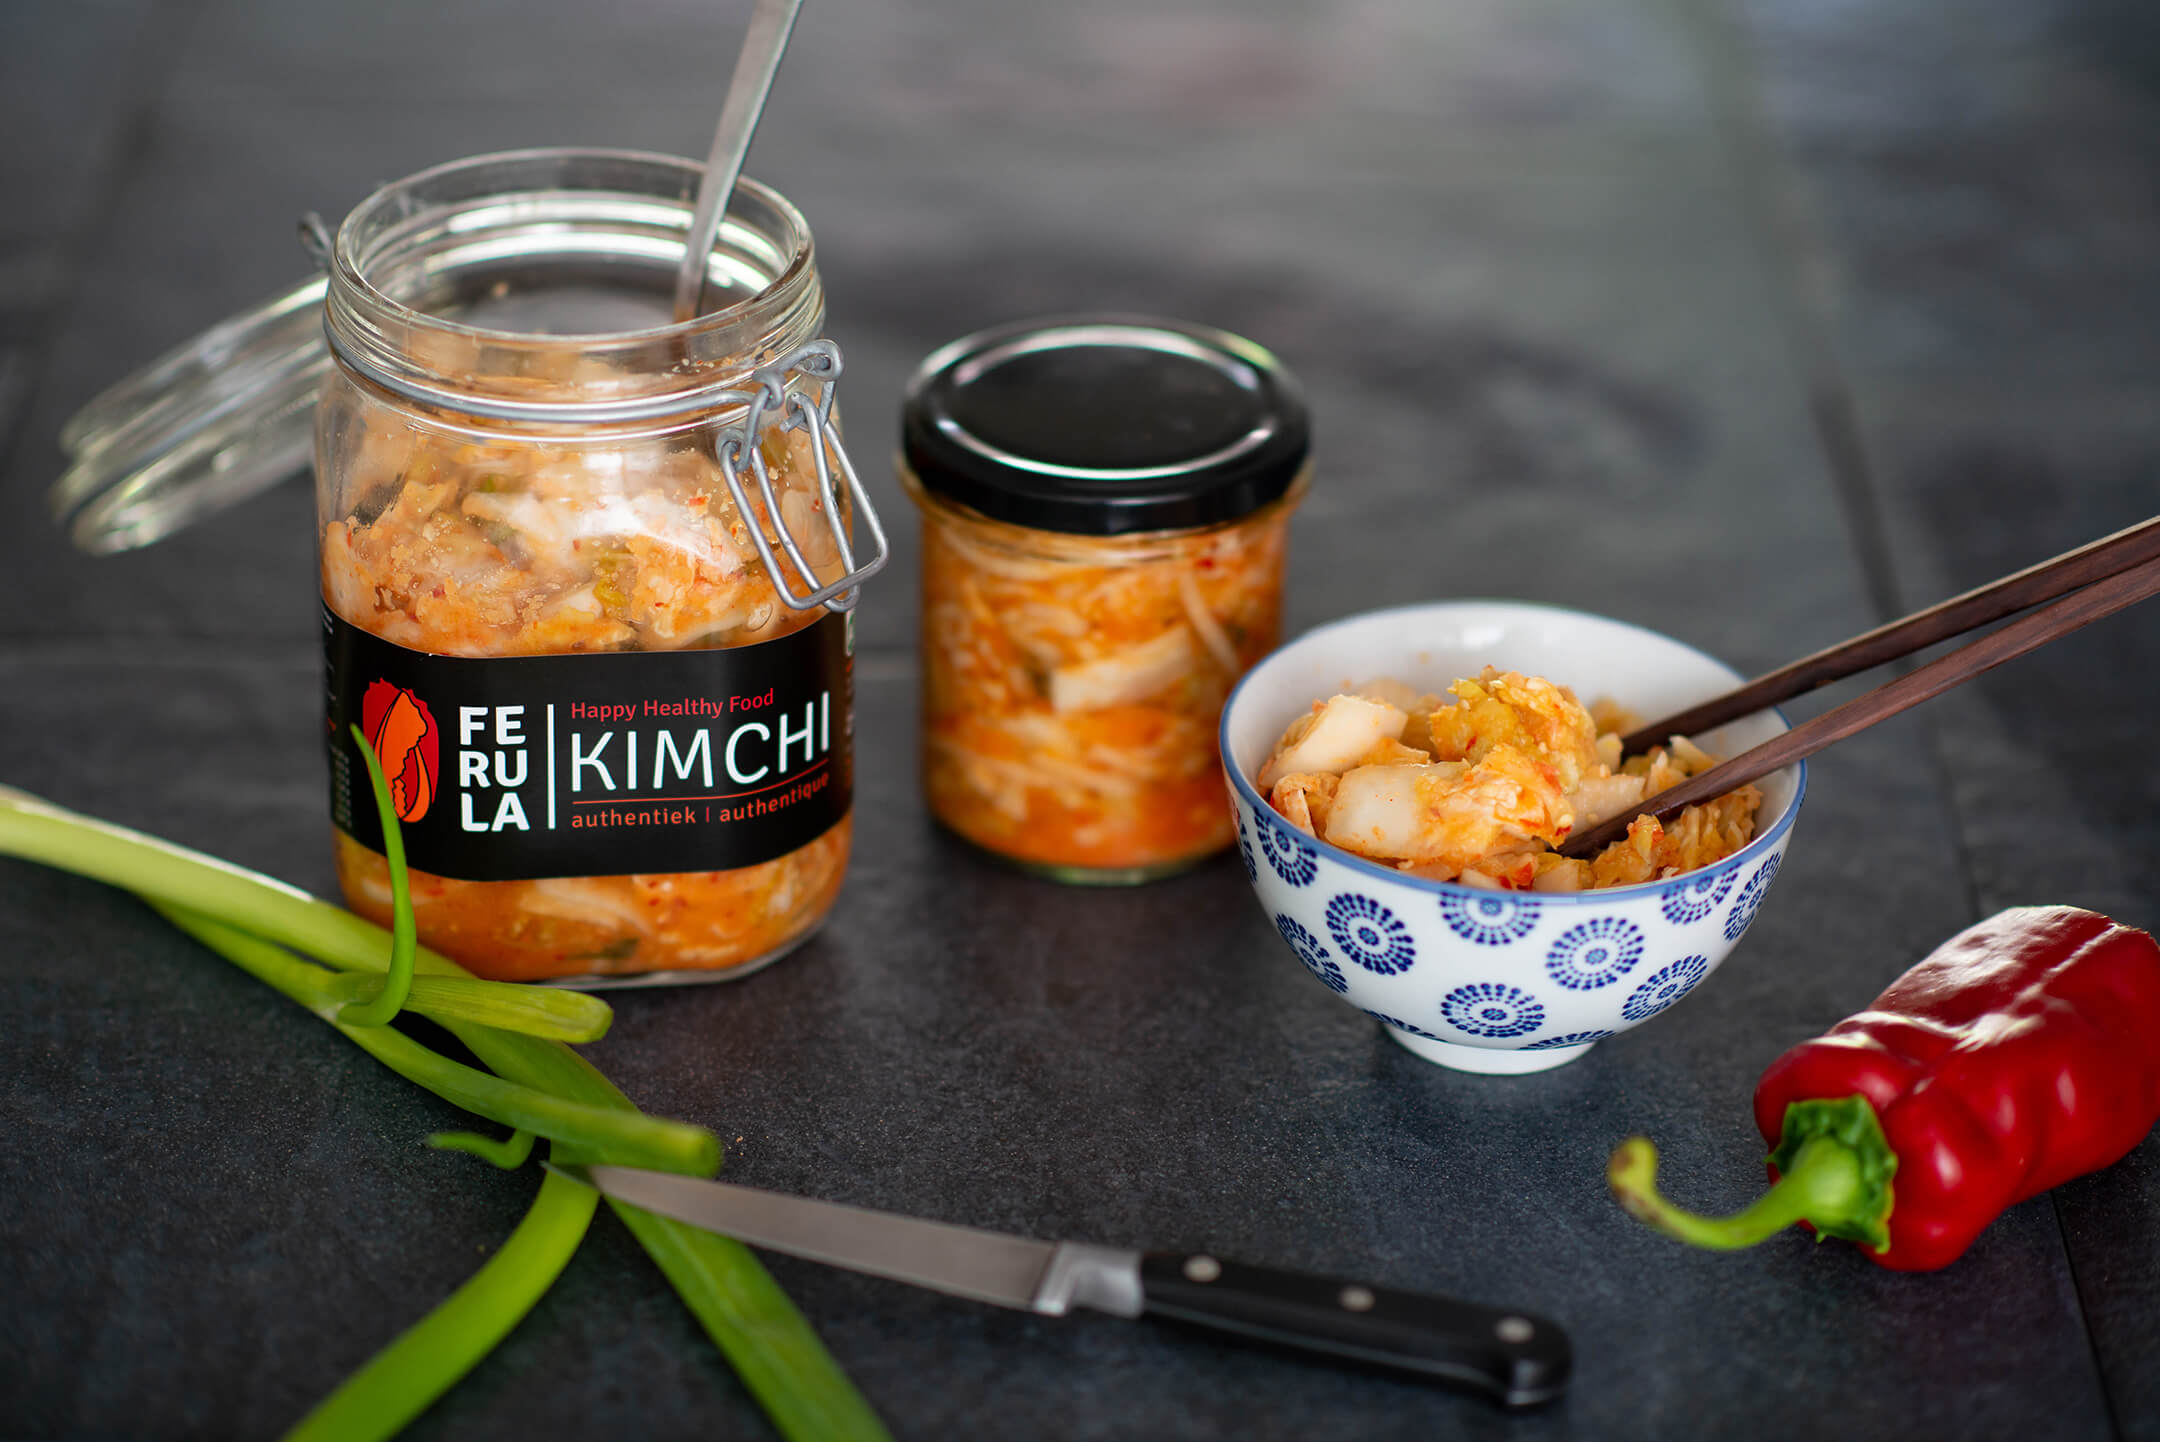 Gelukkig en gezond door het leven? Eet kimchi!